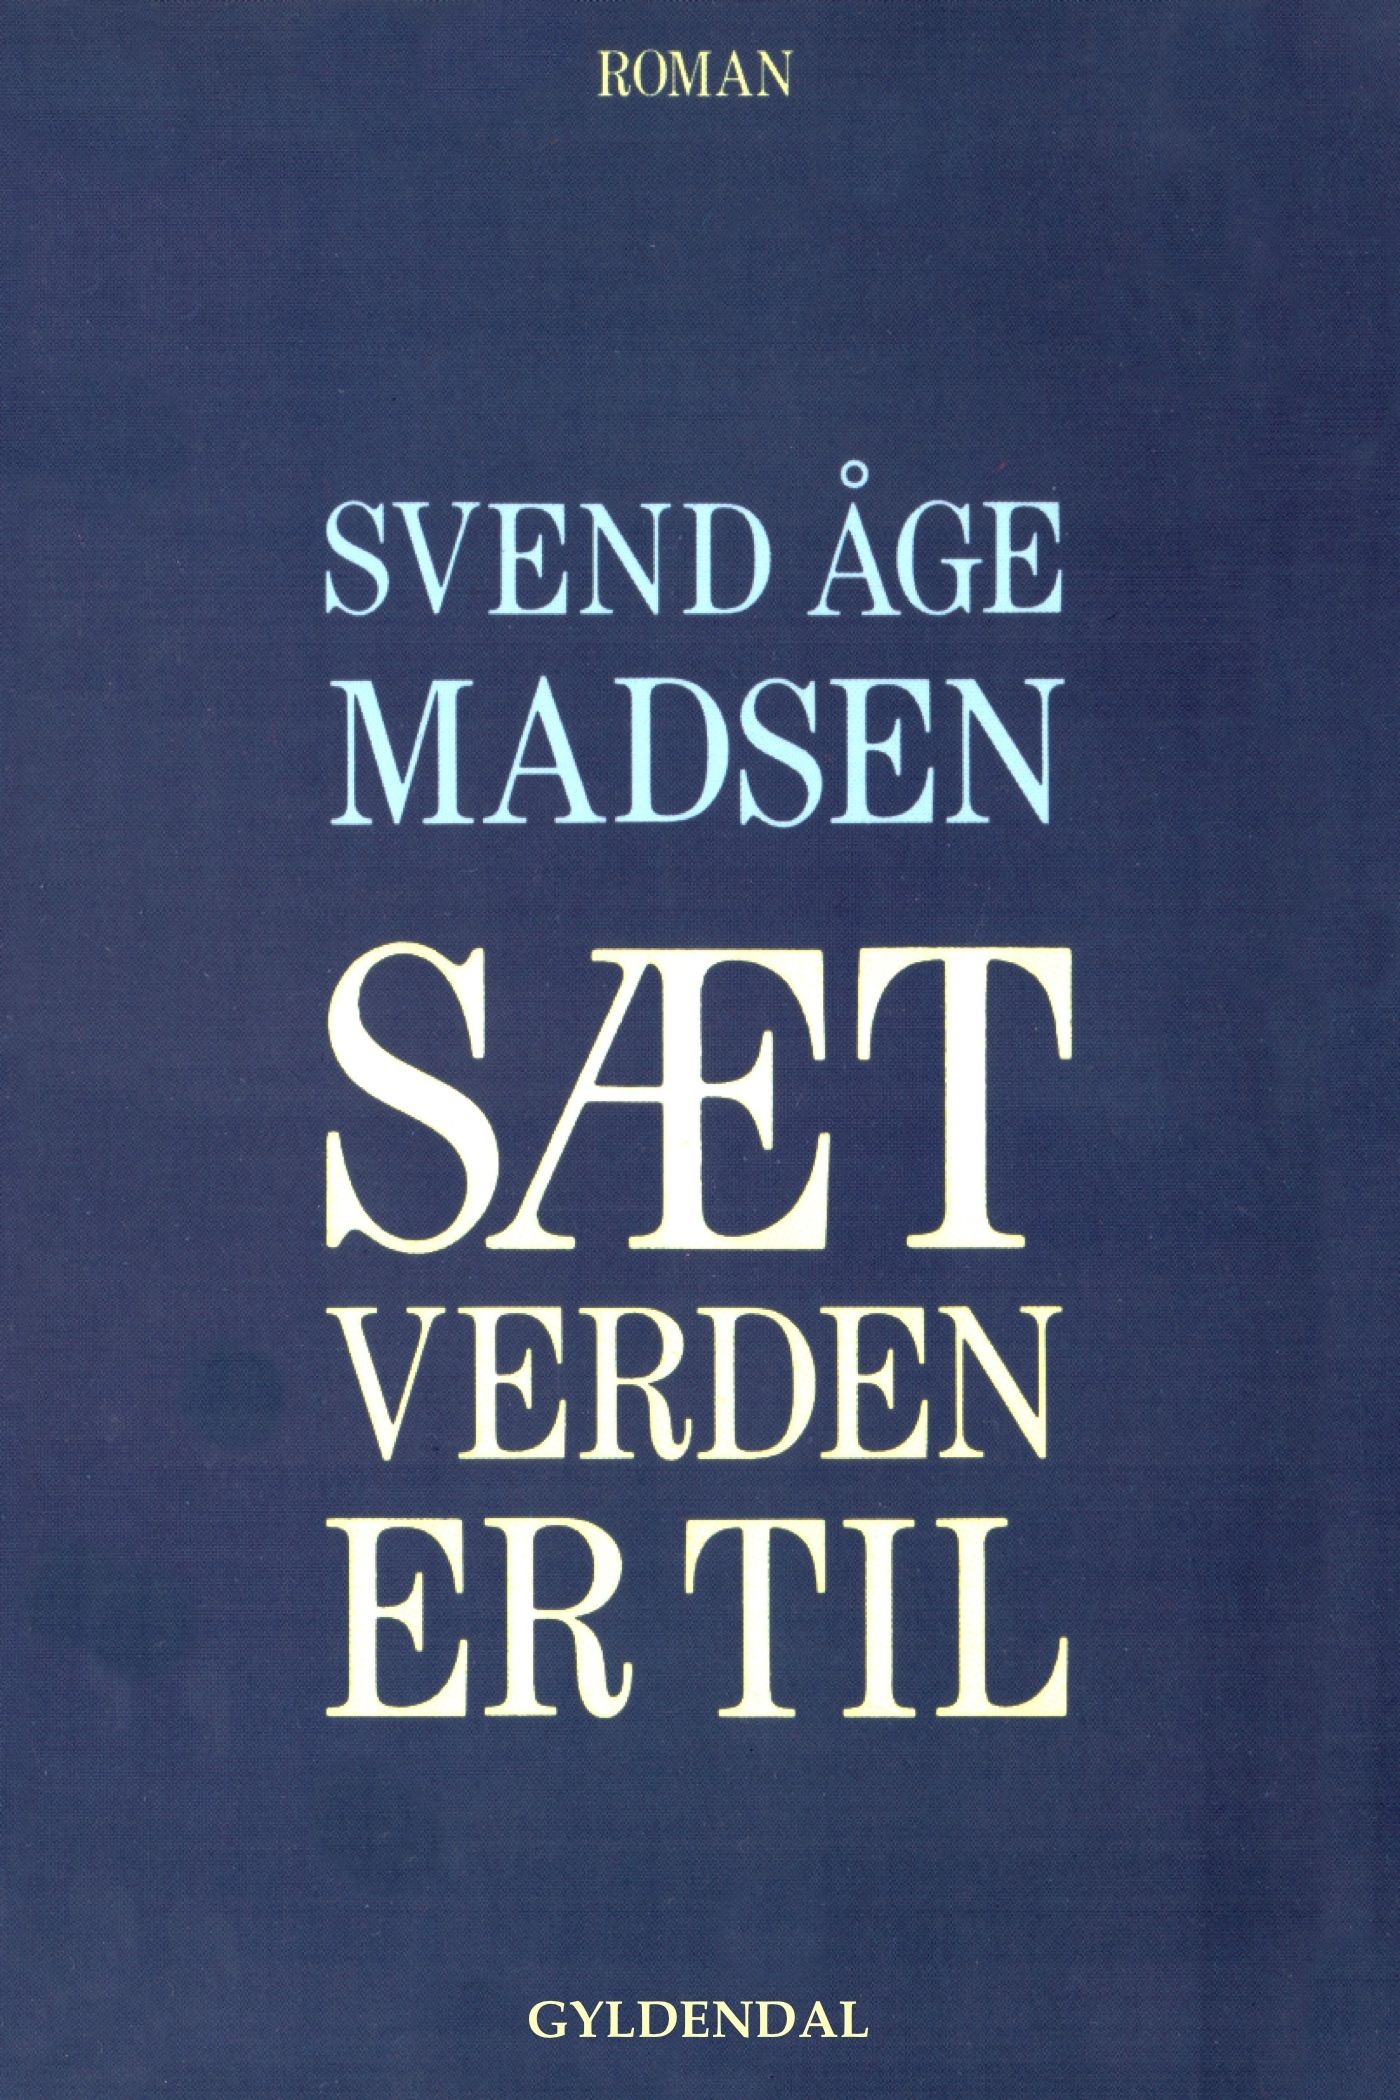 Sæt verden er til, e-bok av Svend Åge Madsen